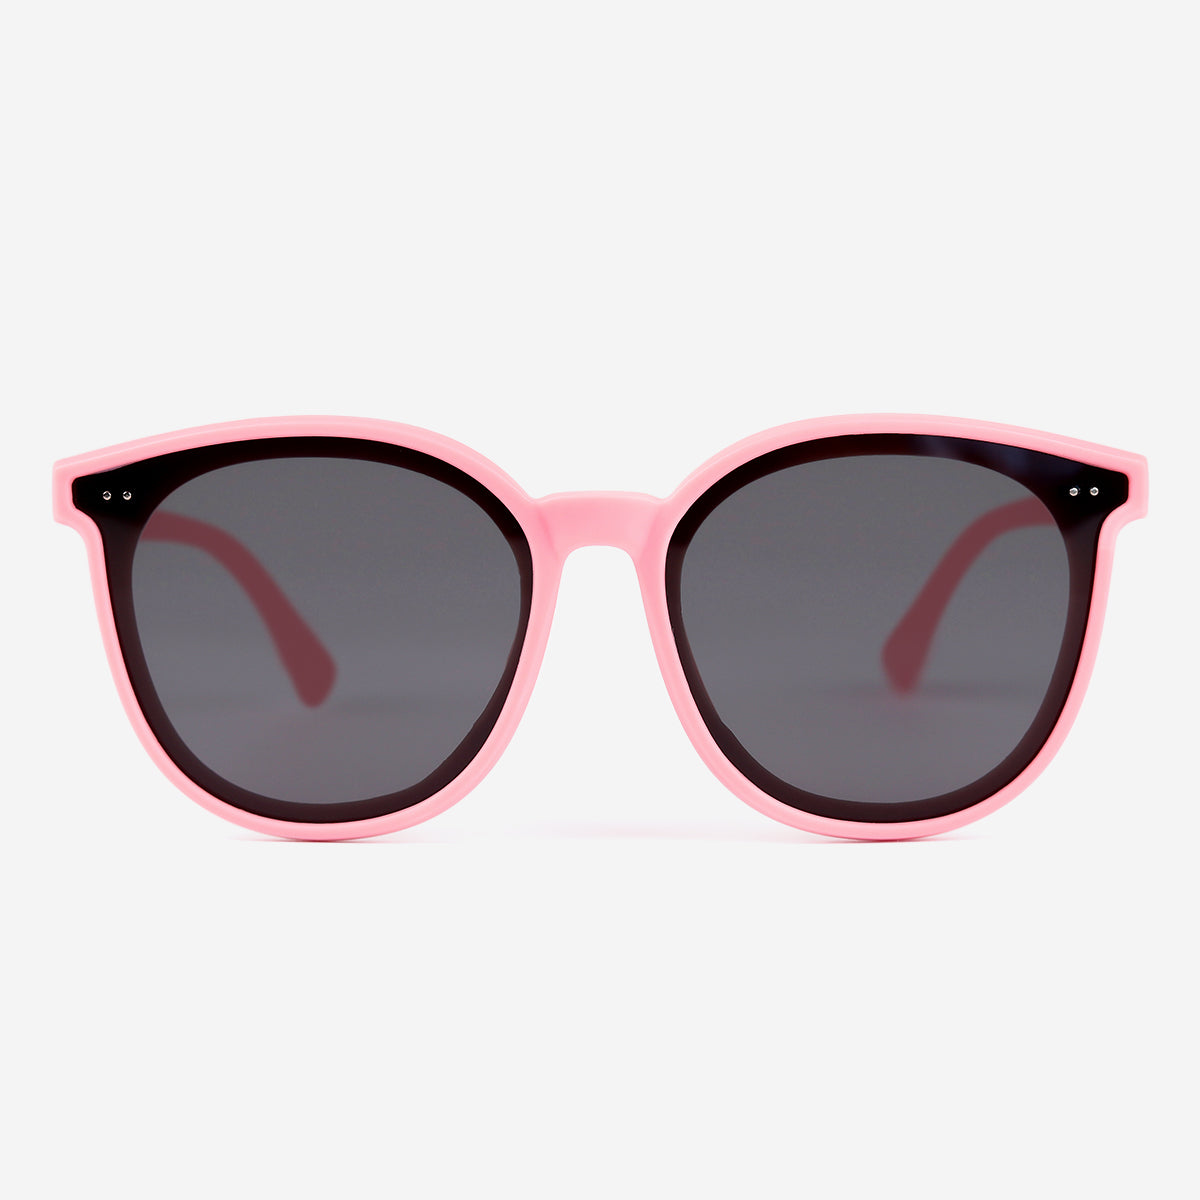 children's sunglasses polarized uv protection soft